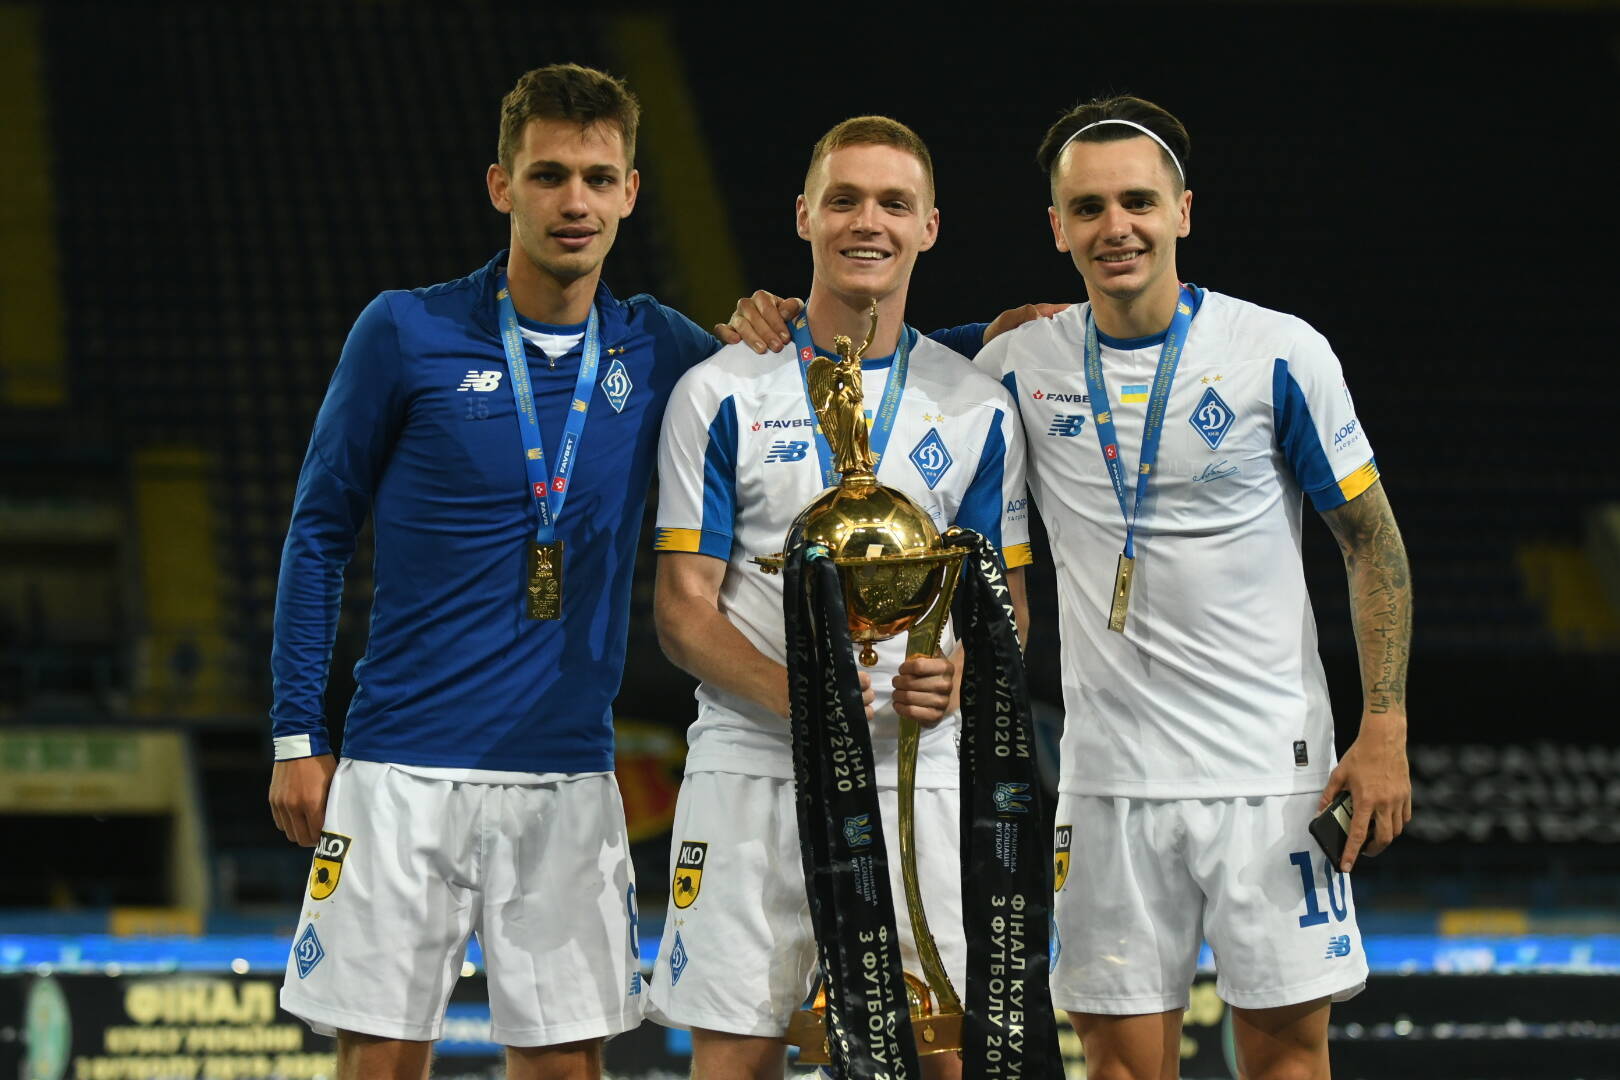 Фотографии с награждения киевского "Динамо" - обладателя Кубка Украины 2019/20